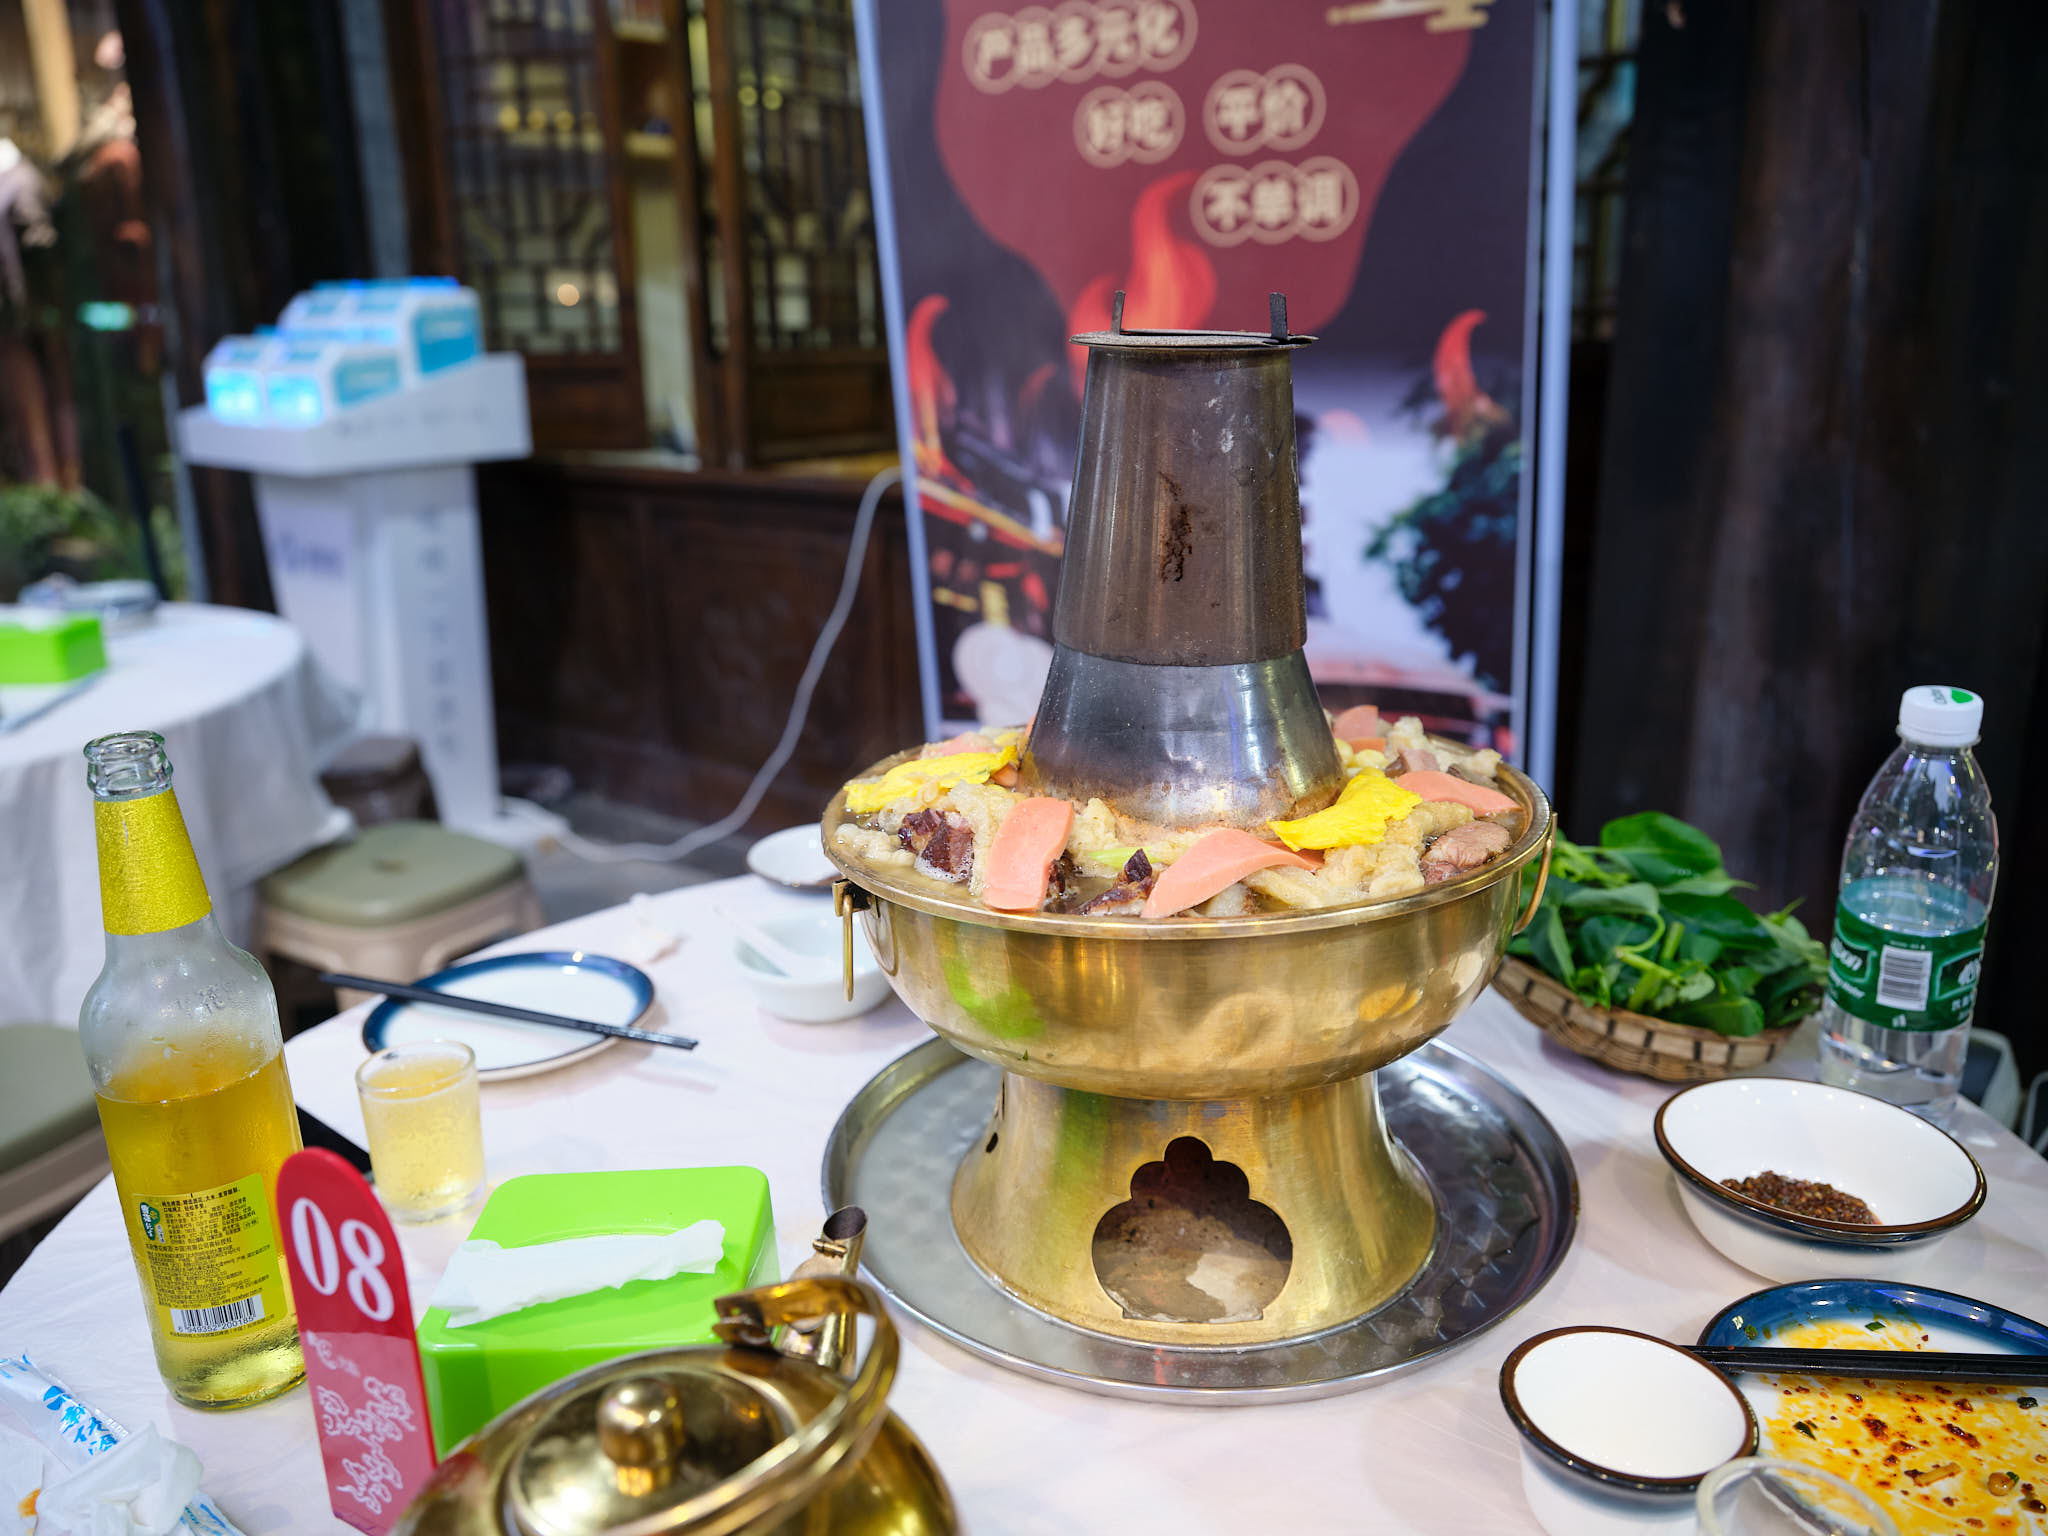 Western Chengdu style hotpot